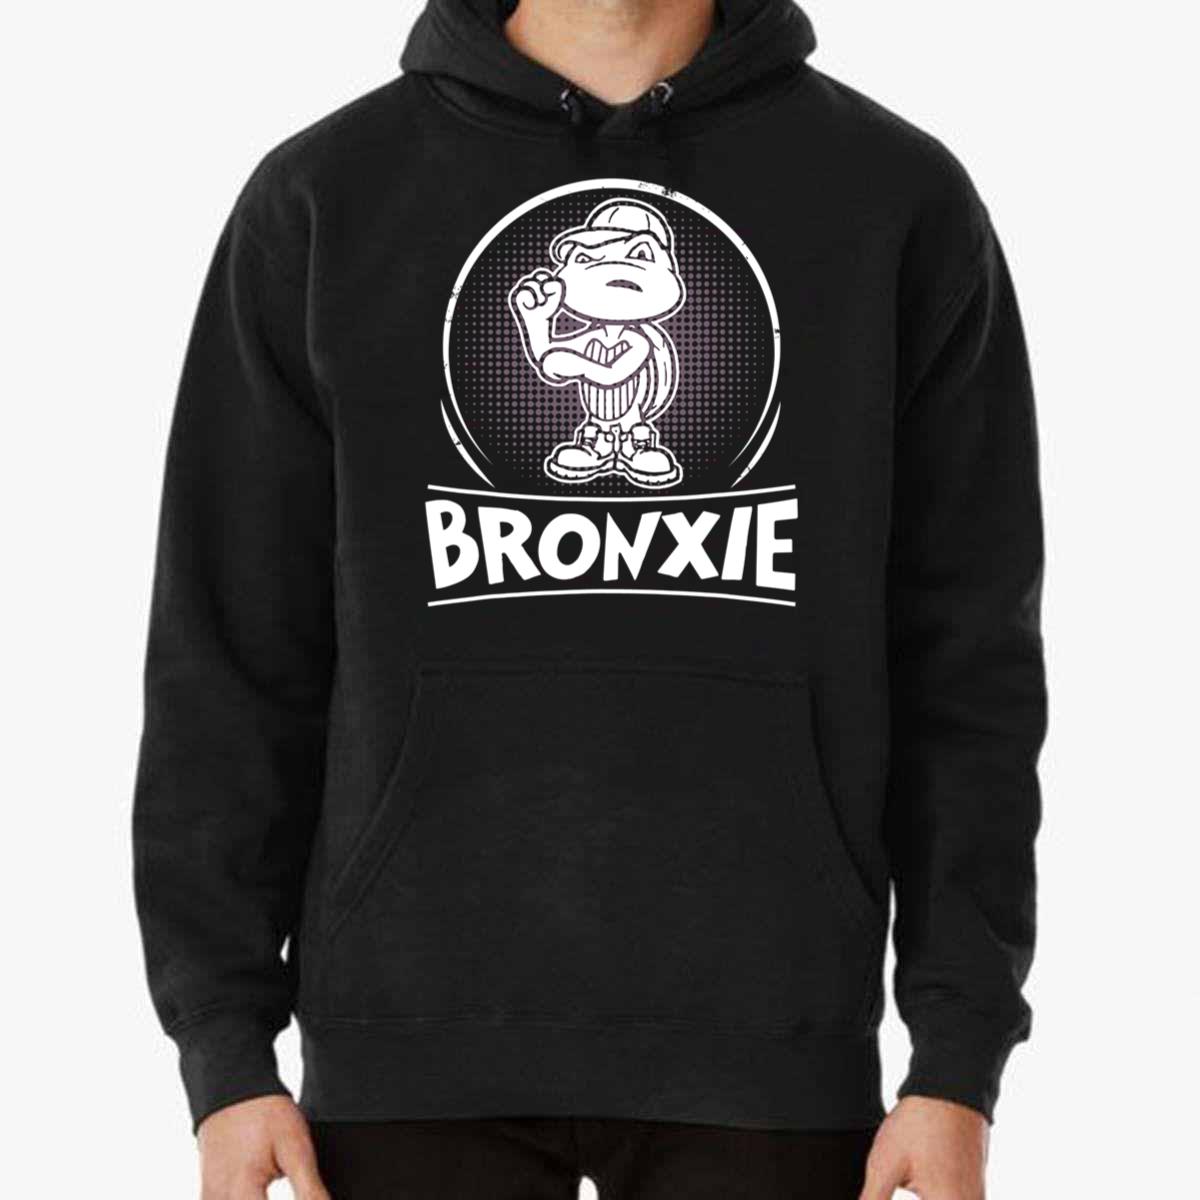 Bronxie Yankees Lover T-Shirt